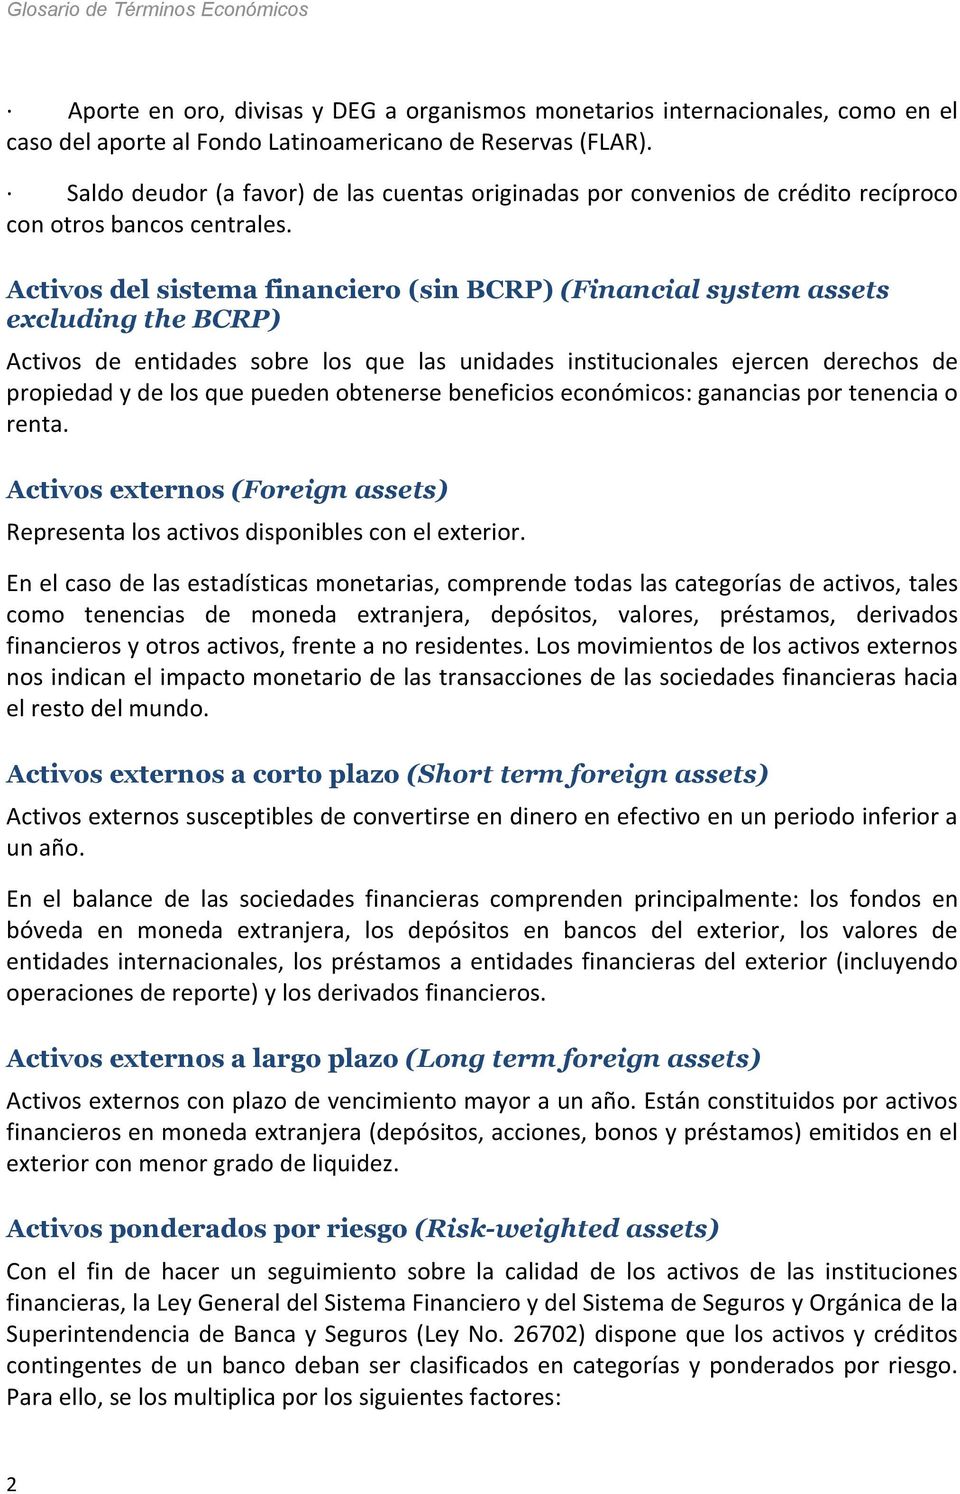 Activos del sistema financiero (sin BCRP) (Financial system assets excluding the BCRP) Activos de entidades sobre los que las unidades institucionales ejercen derechos de propiedad y de los que